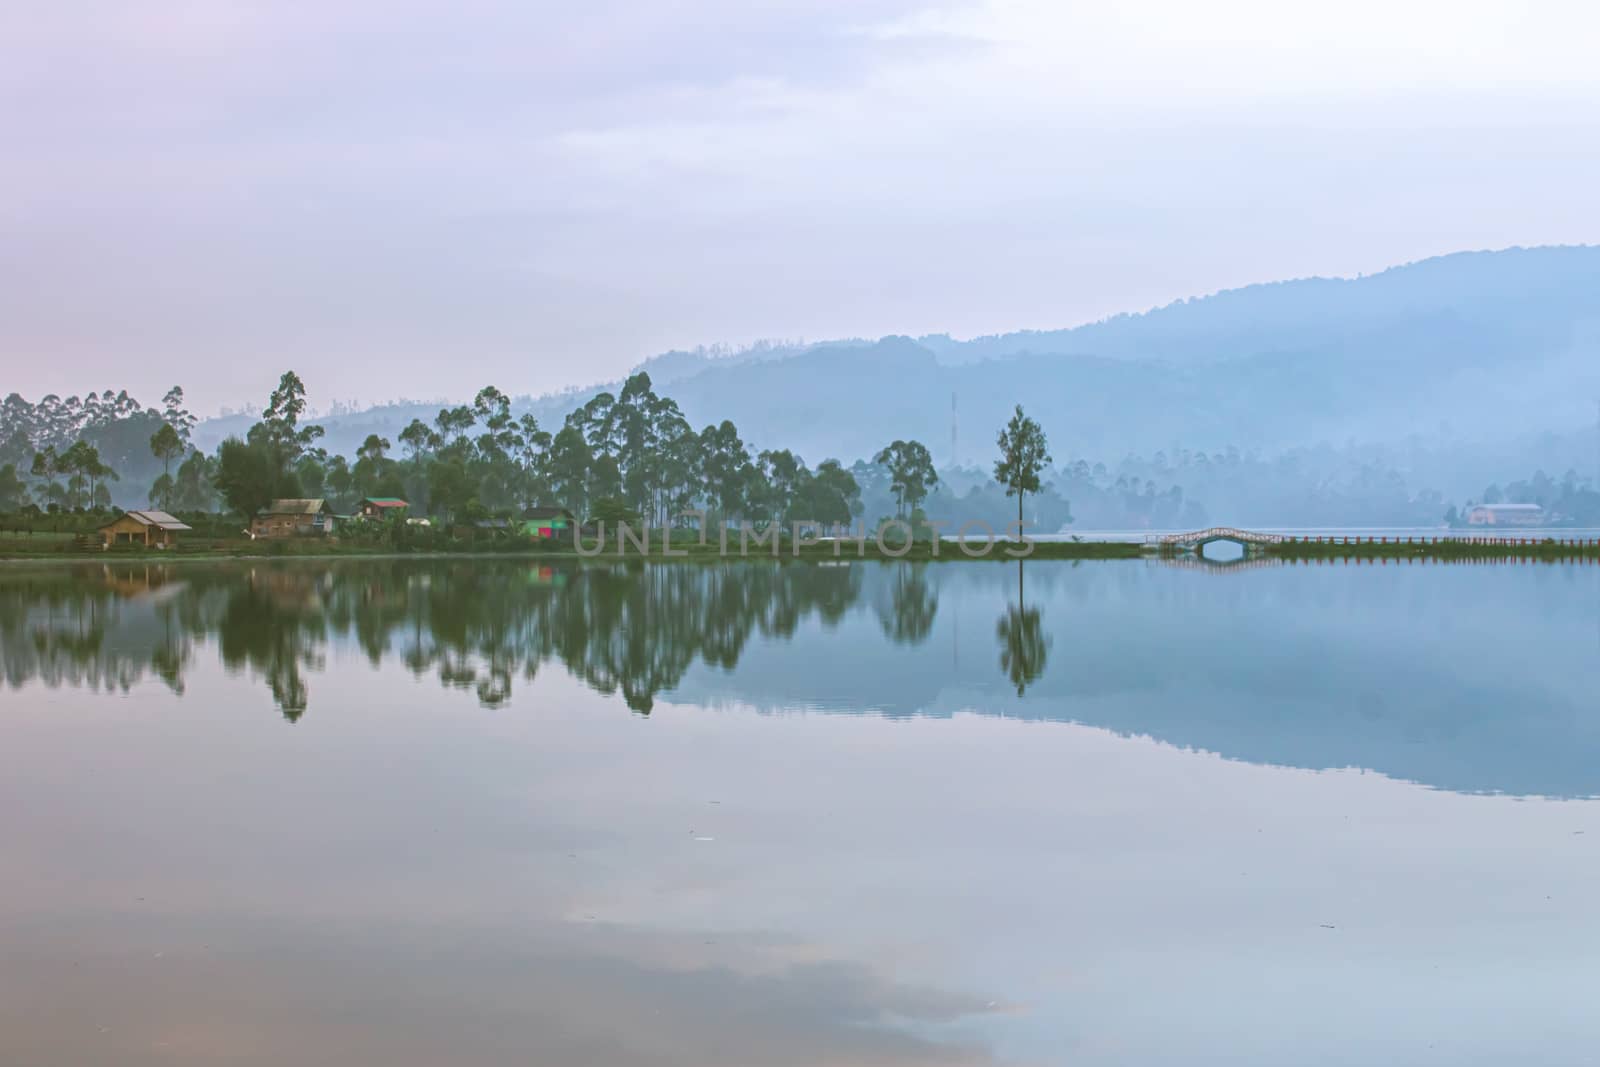 reflection on the lake Cileunca by irwanmotret